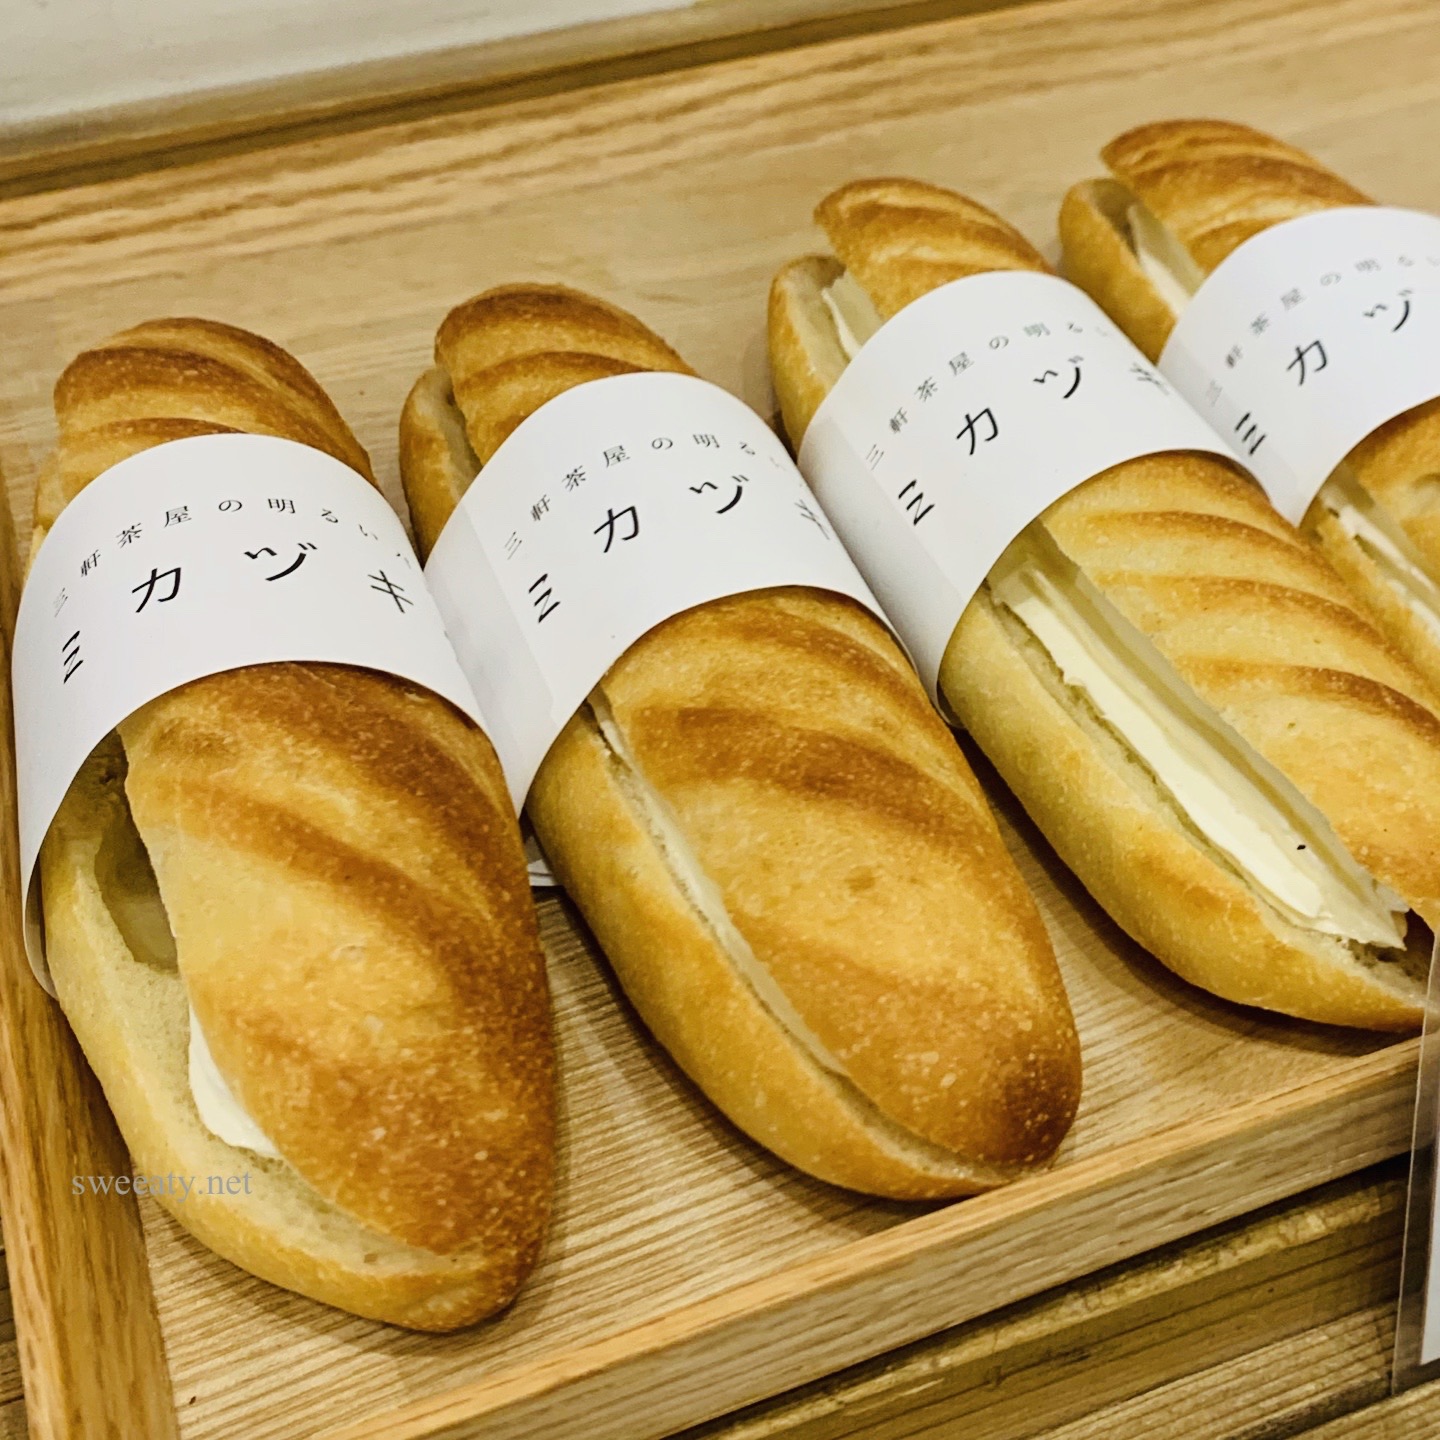 パン屋激戦区三軒茶屋の明るいパン屋さん♡ミカヅキ堂